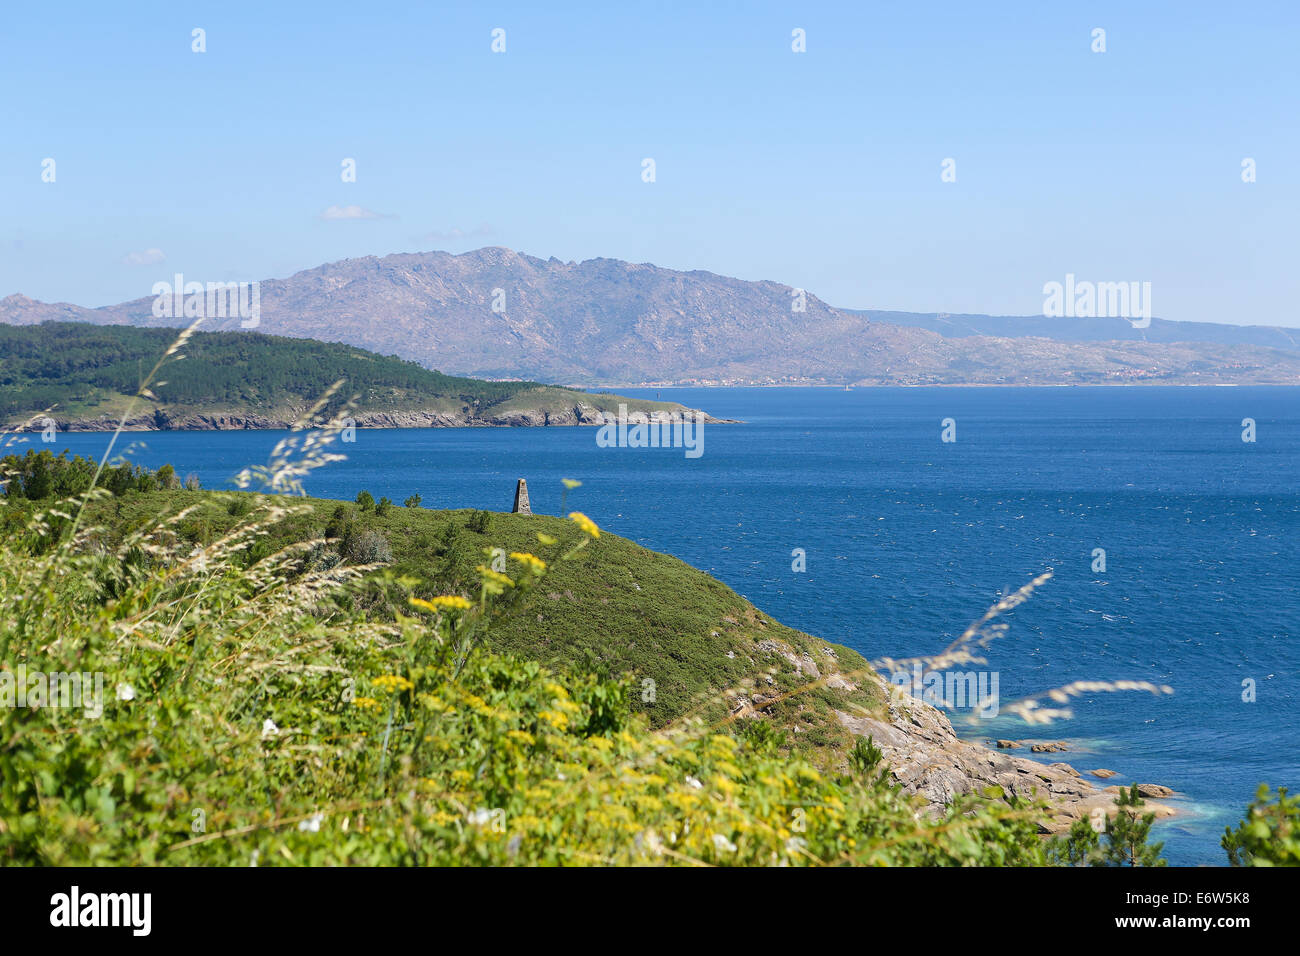 Le cap Finisterre ou Cabo Fisterra est un rock-bound péninsule sur la Costa da Morte en Galice, Espagne. Banque D'Images